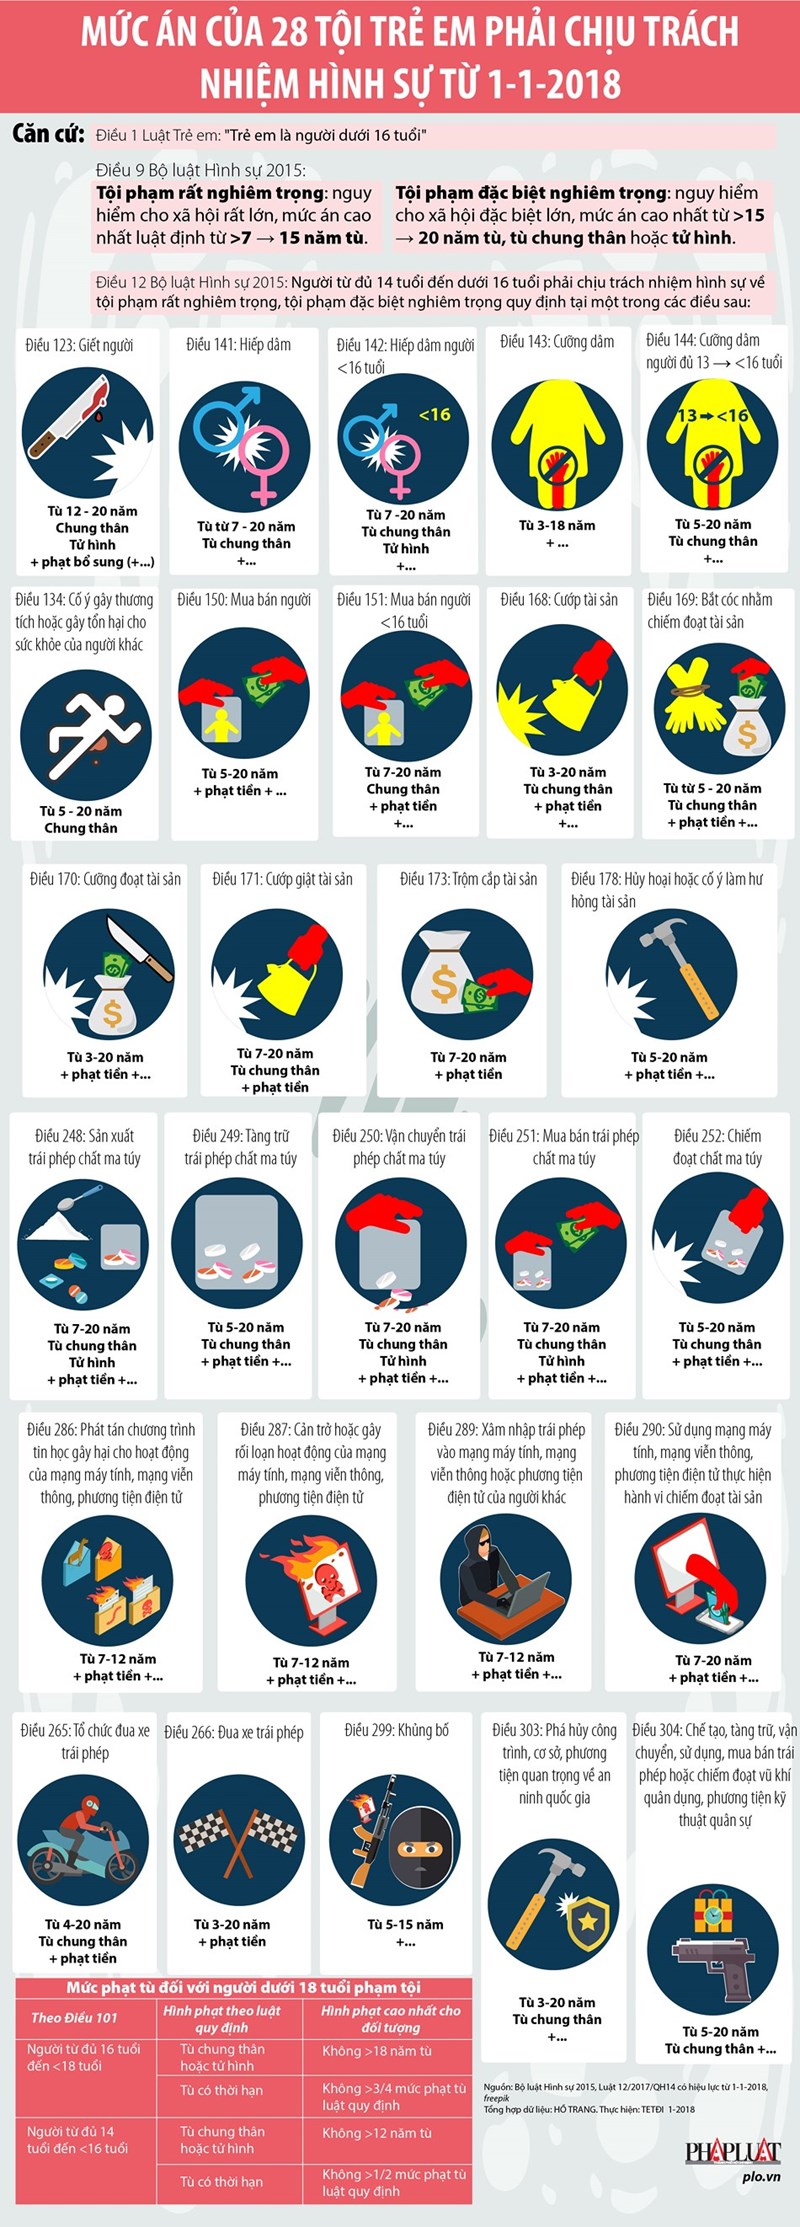 [Infographic] Mức án của 28 tội trẻ em phải chịu trách nhiệm hình sự - Ảnh 1